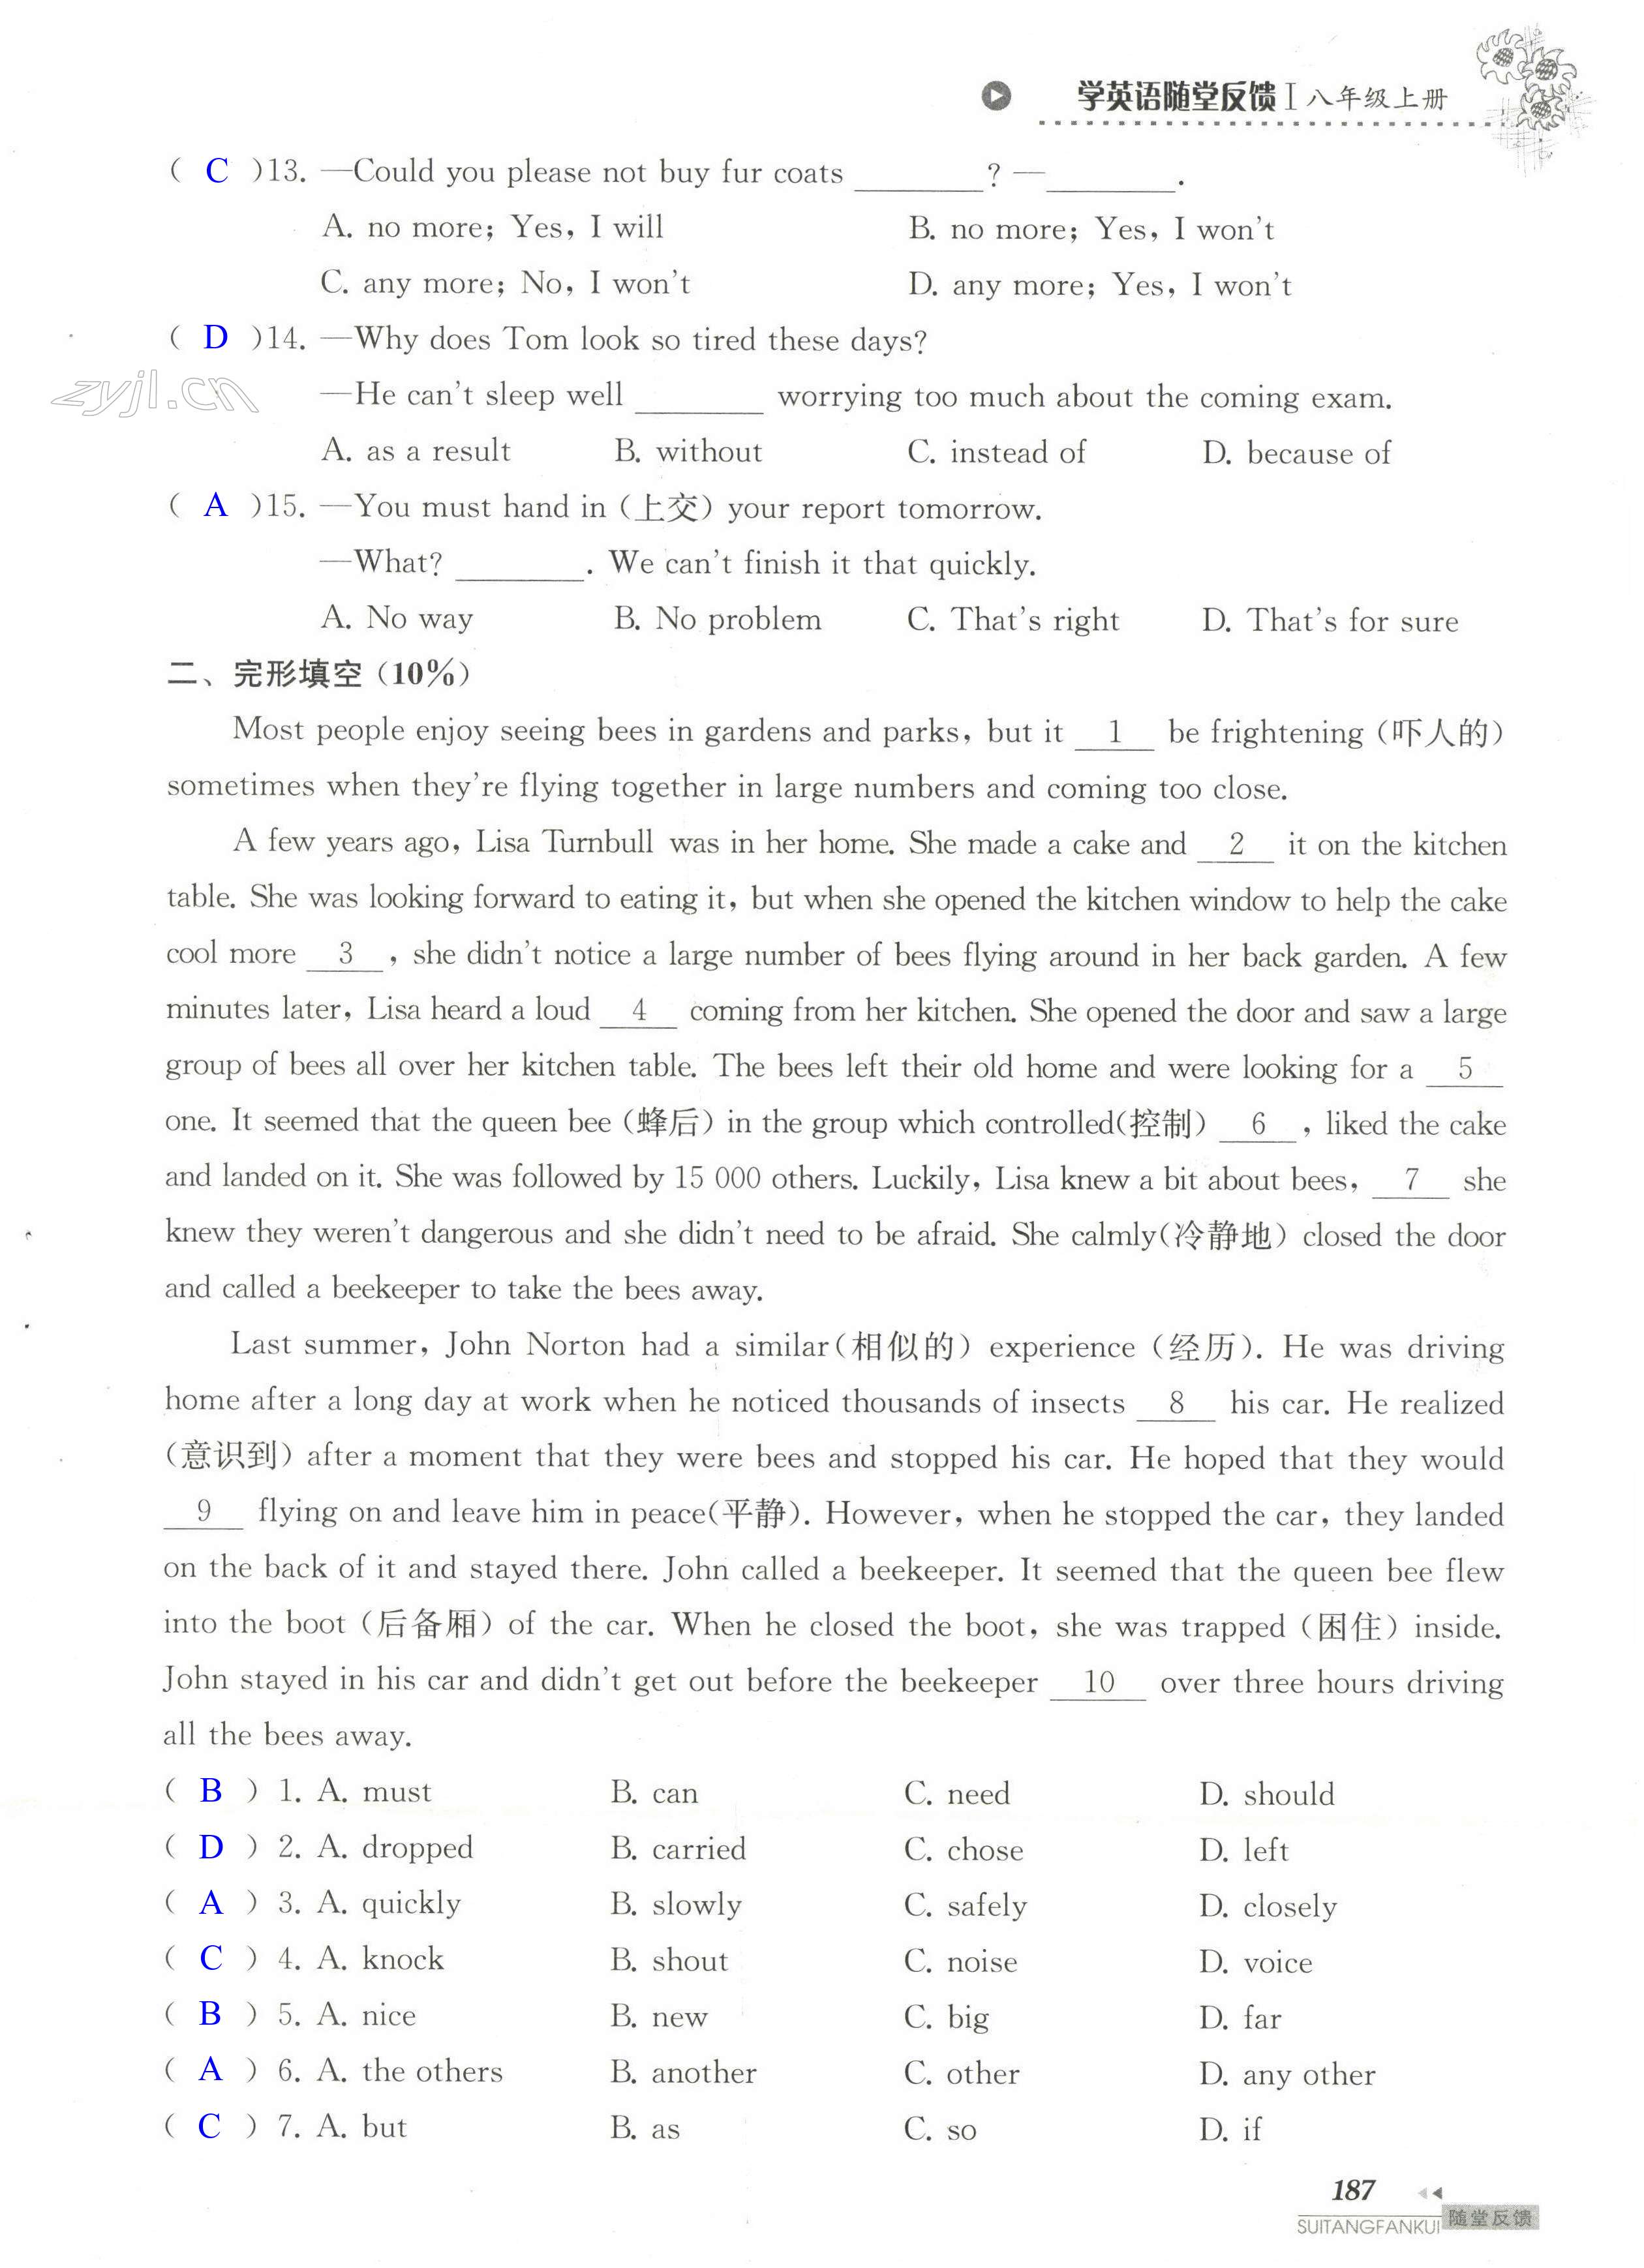 单元综合测试卷 Test for Unit 5 of 8A - 第187页